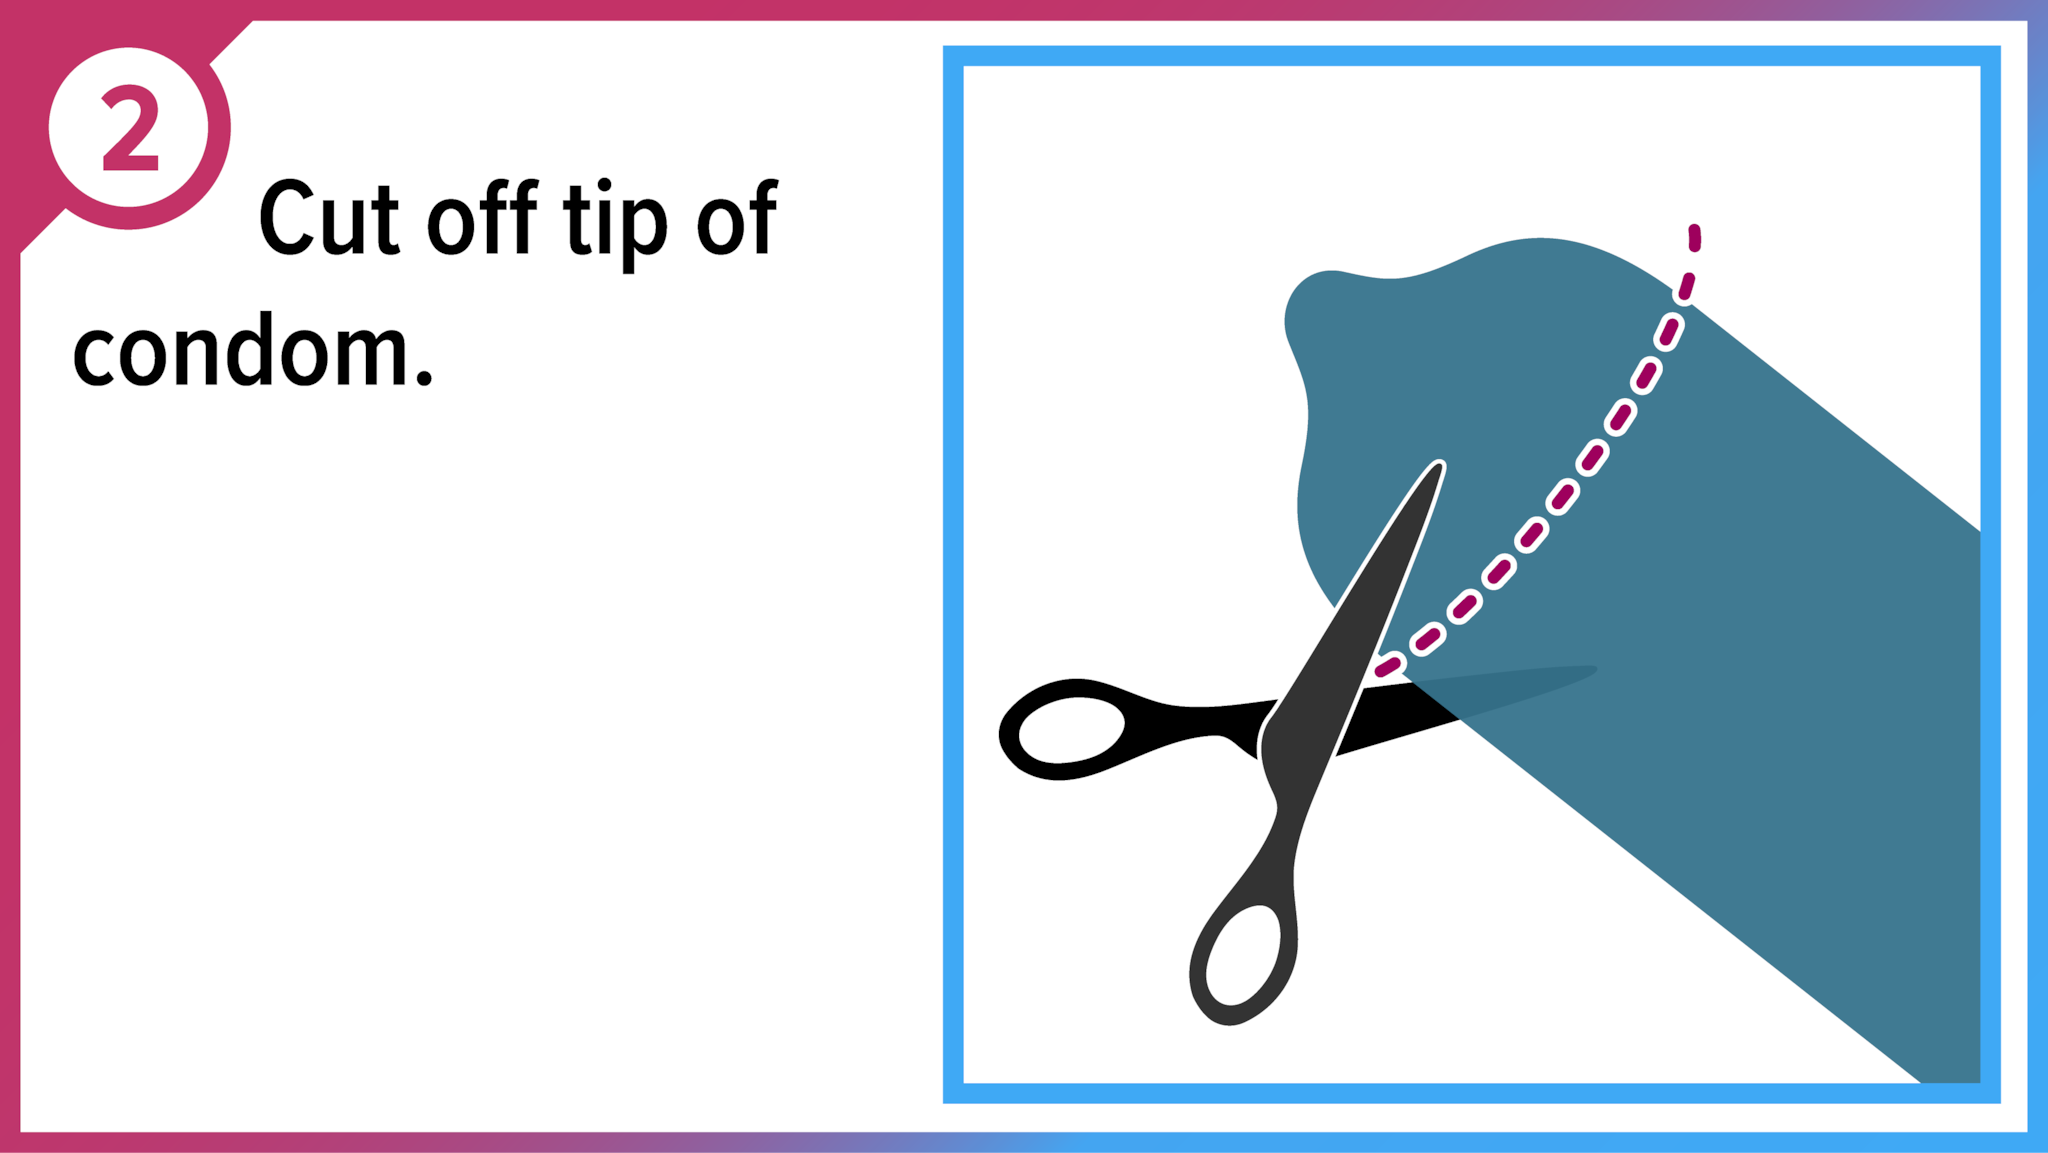 Scissors cutting condom tip off. Cut off tip of condom.